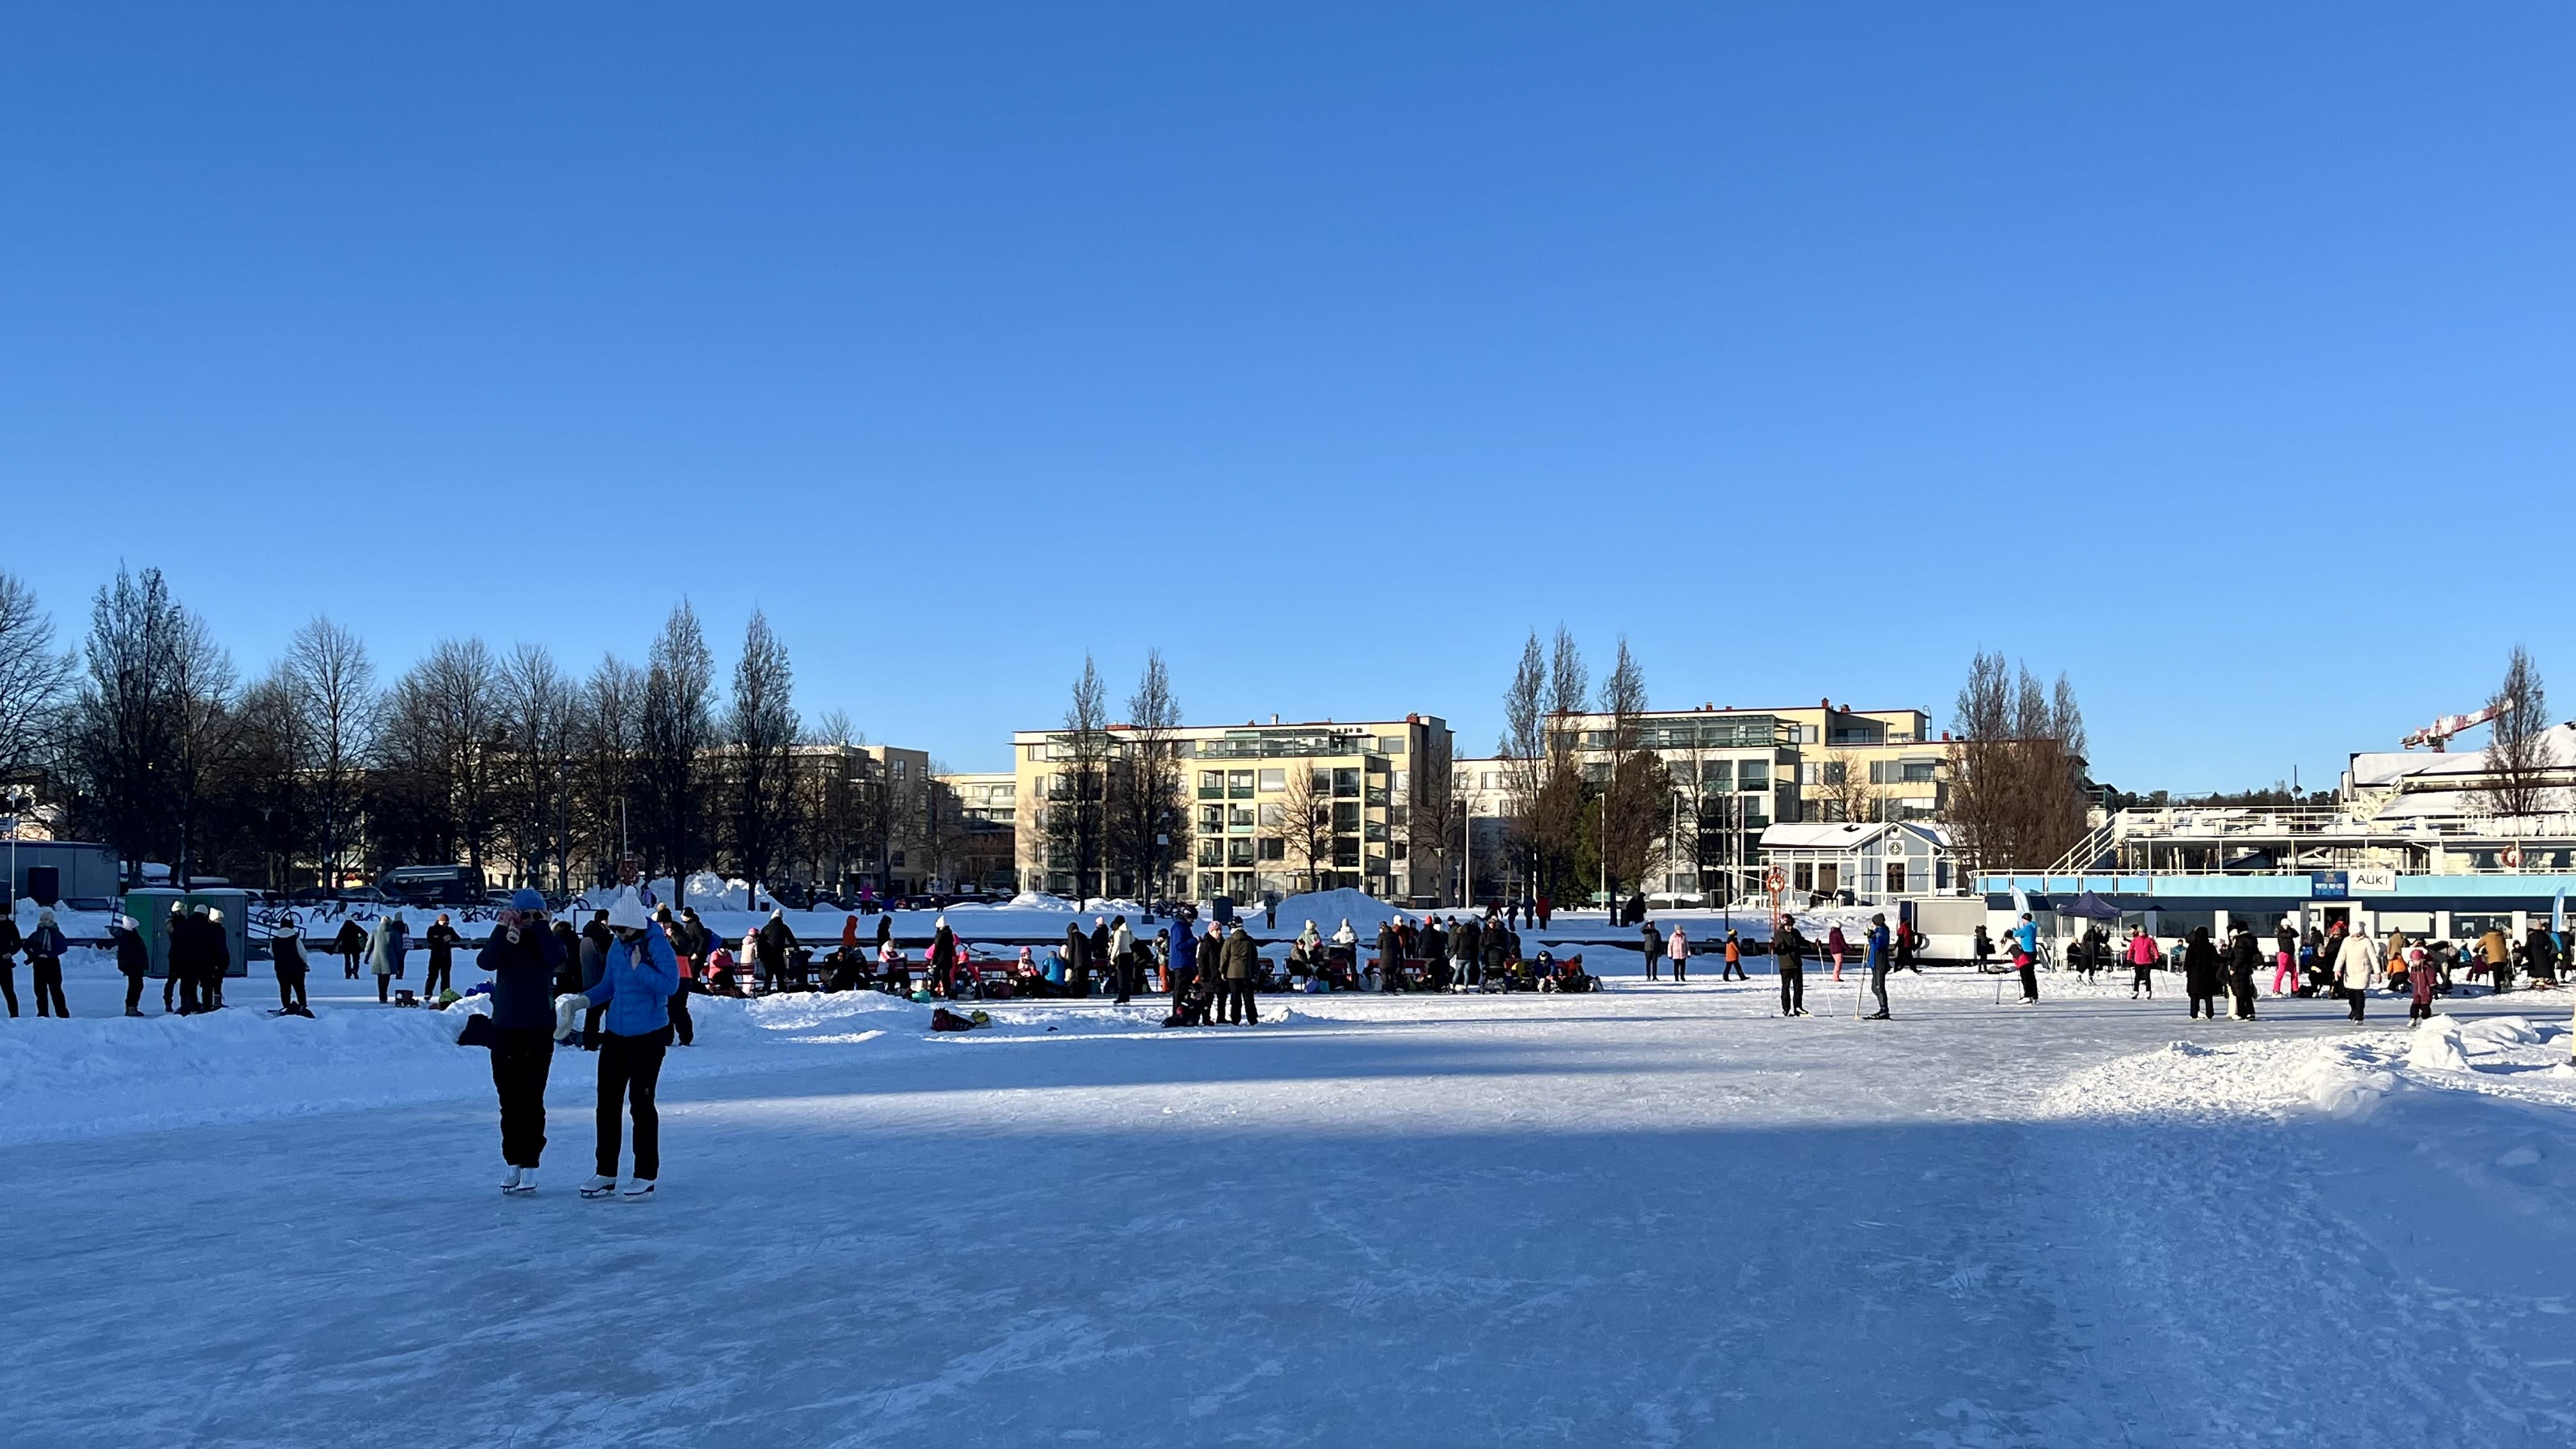 Finnland hat Mitte Februar Apriltemperaturen